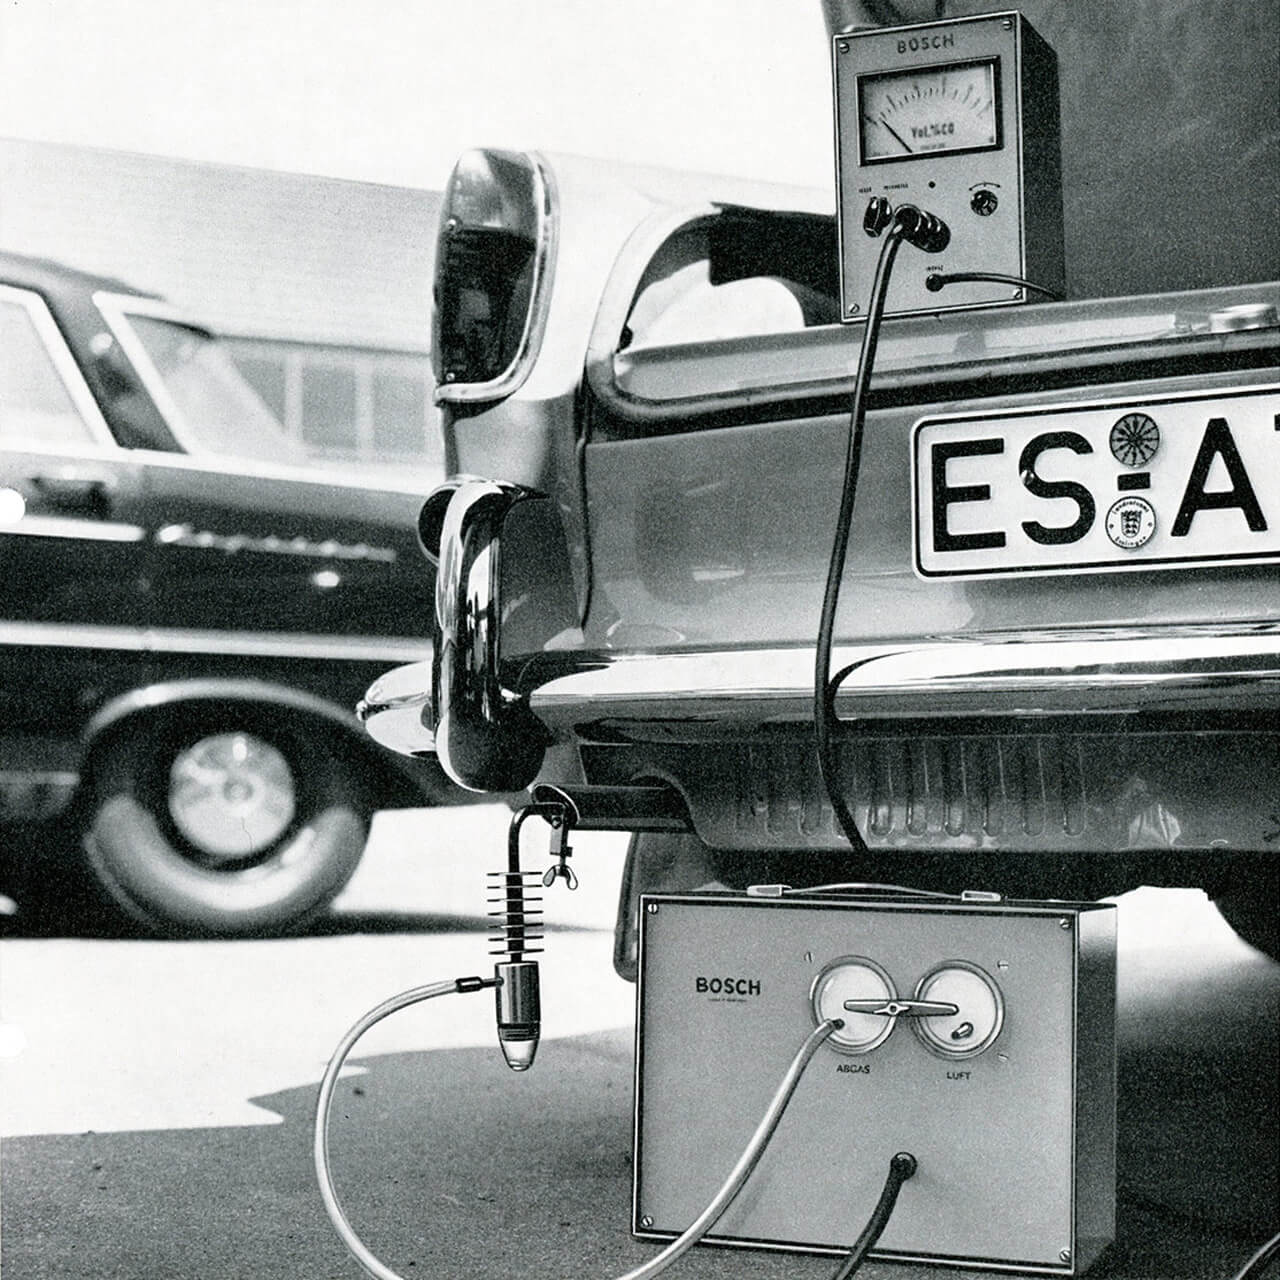 Az üzemanyagbefecskendezés piacra dobásával a Bosch újabb lendületet adott a járműipar fejlődésének